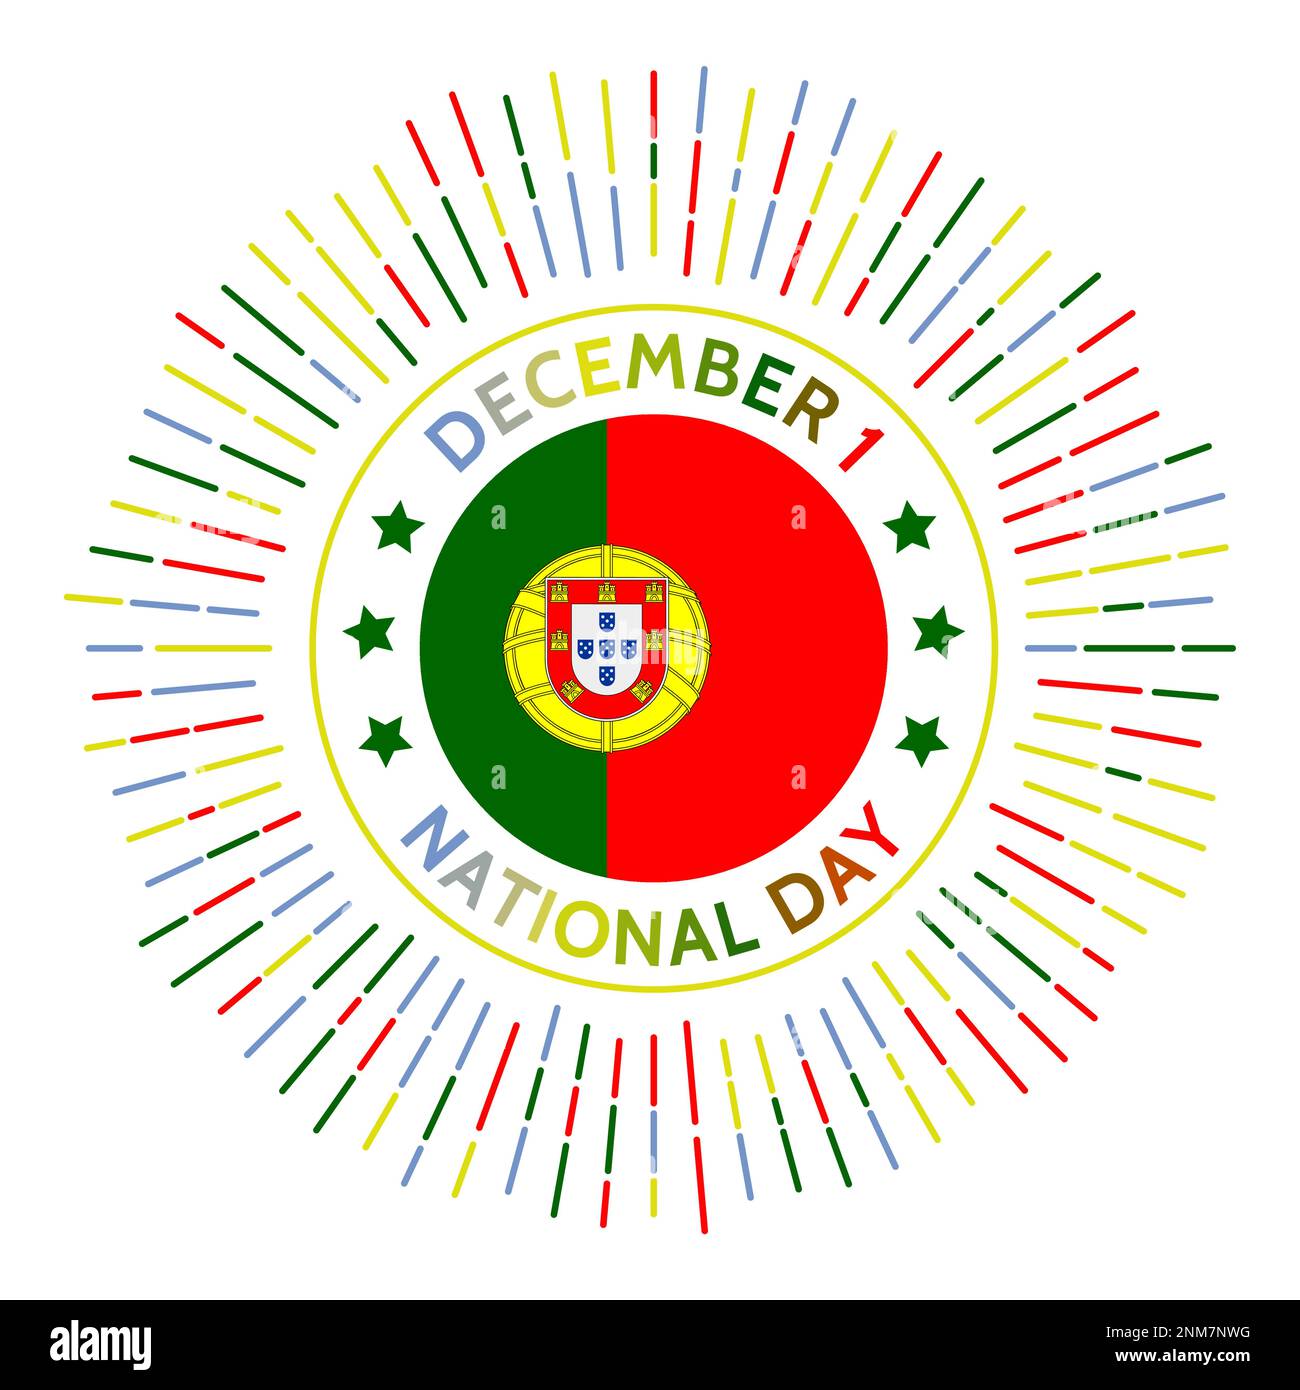 Badge nazionale portoghese per la giornata. Data del ripristino della piena autonomia portoghese dall'Unione Iberica con la Spagna. Celebrato il 1 dicembre. Illustrazione Vettoriale